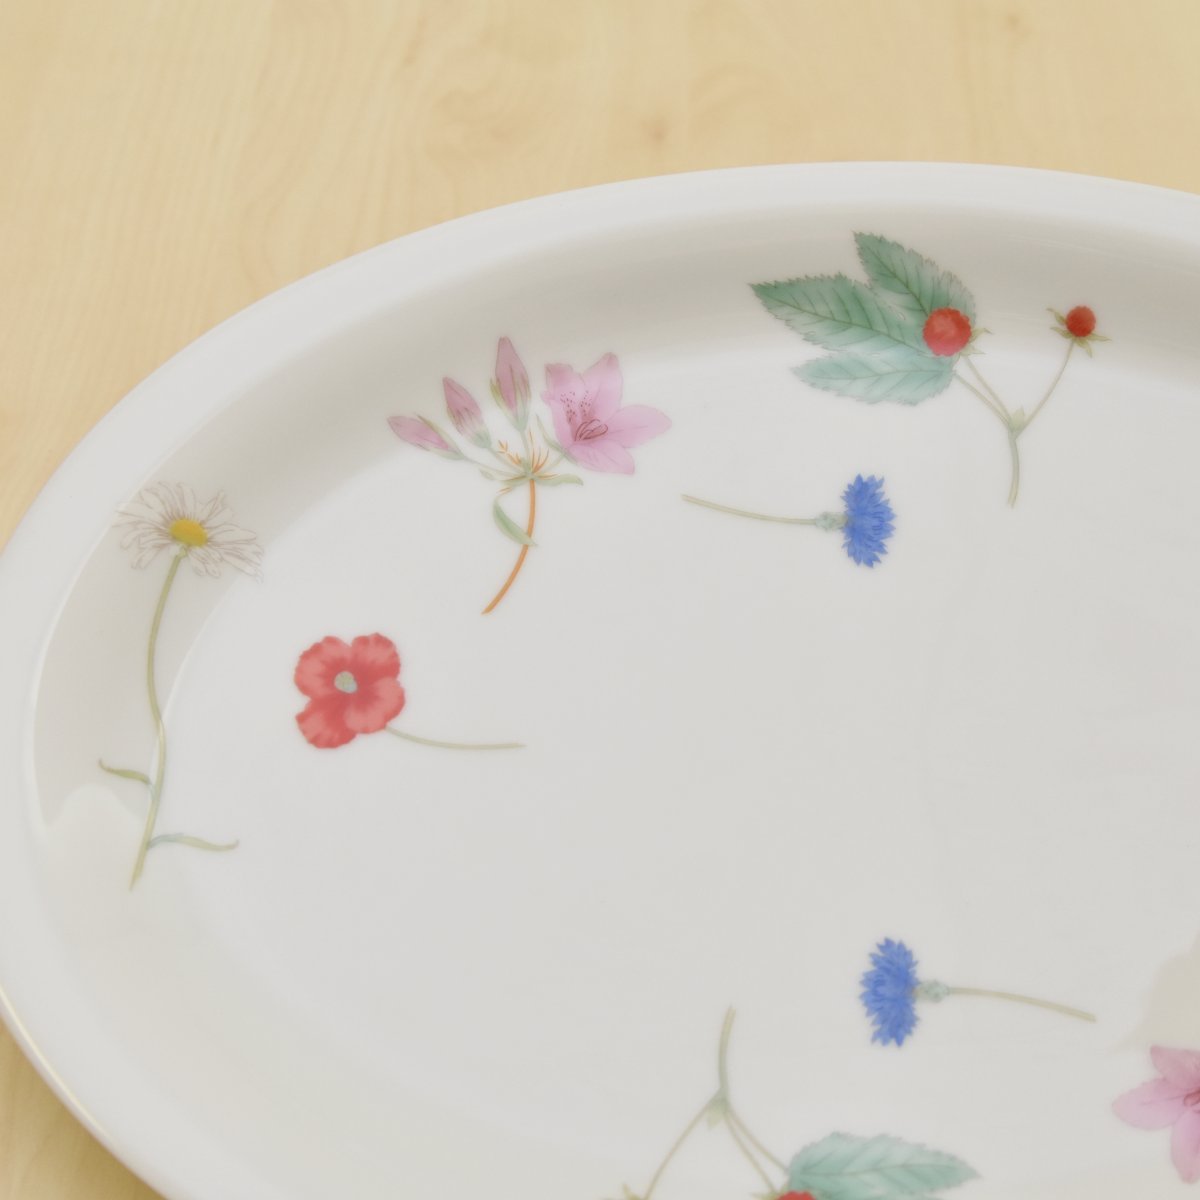 色々なお花のデザインが一枚のお皿の中にちりばめられています。